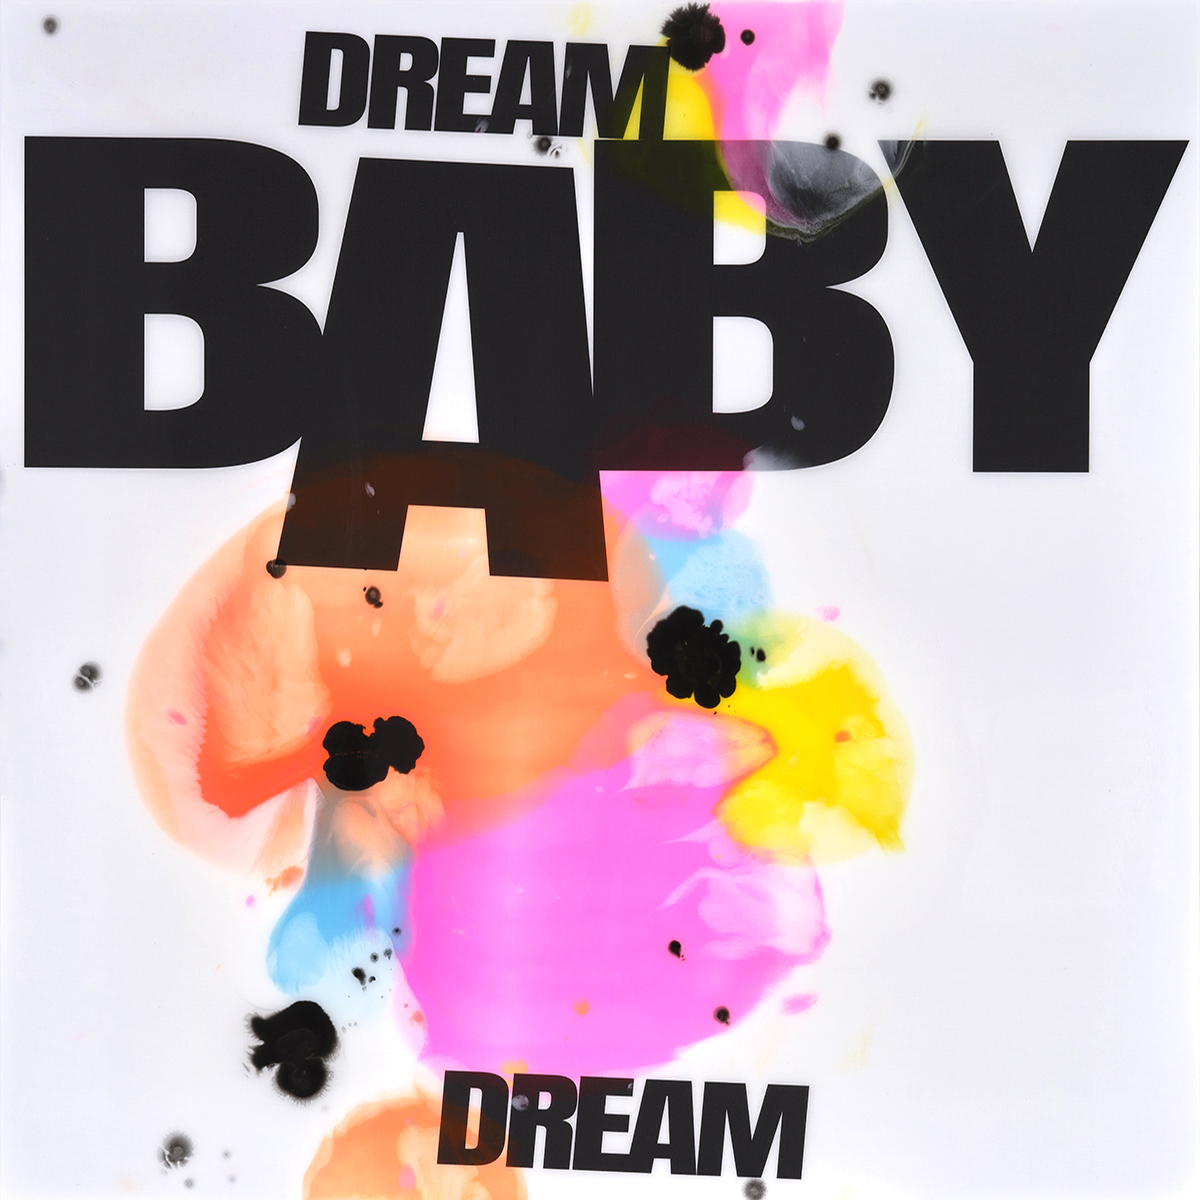 Dream Baby Dream - Epoxy - 2022 (multiple Größen)